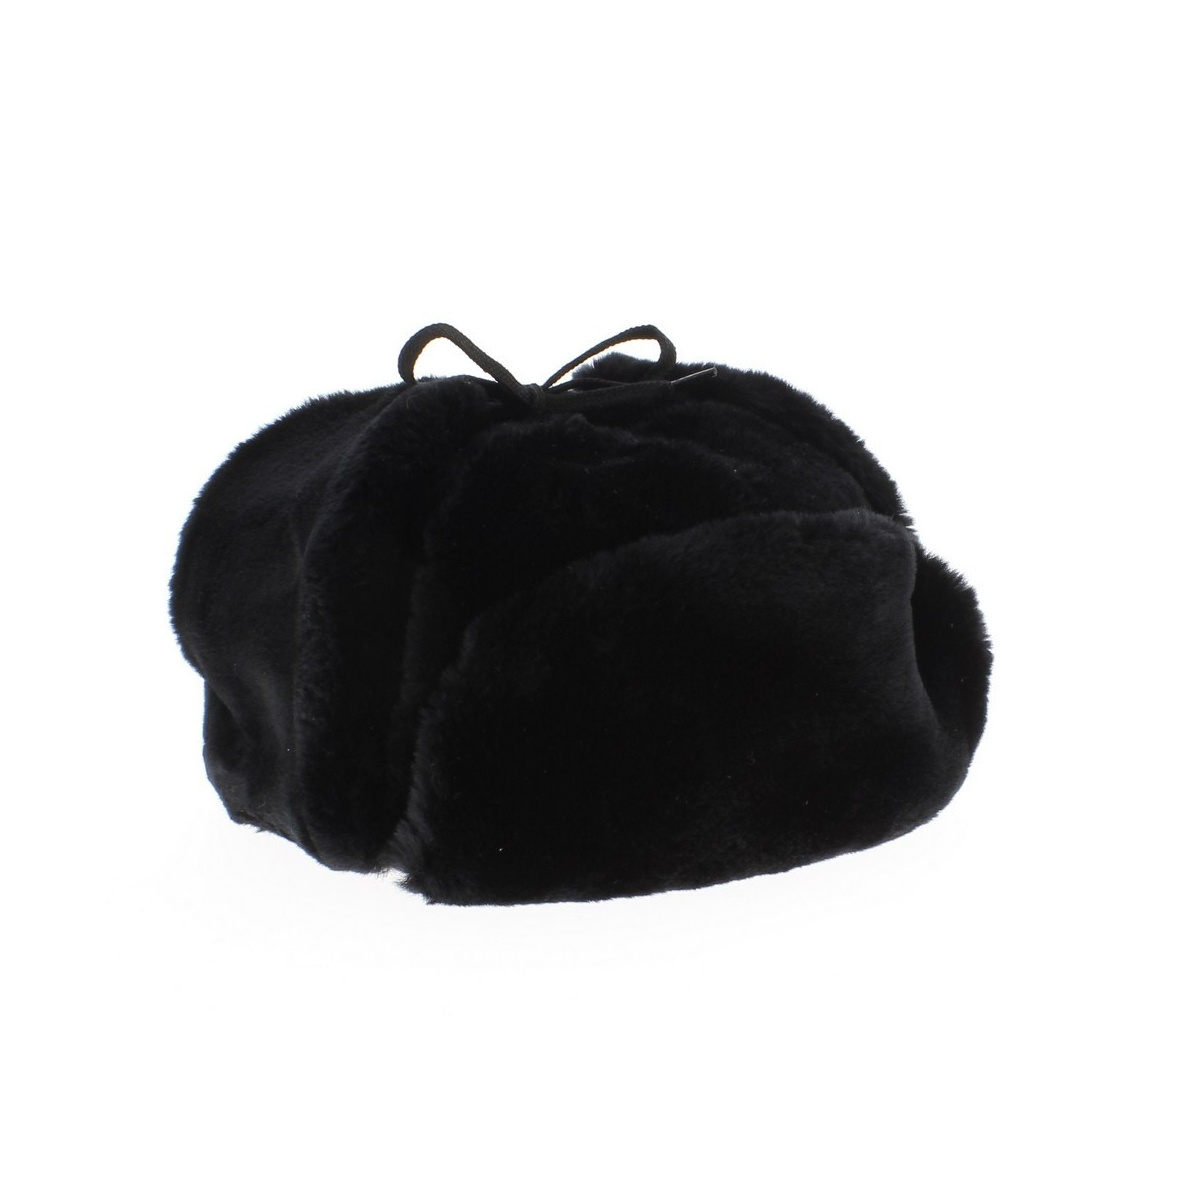 Chapka in black faux fur